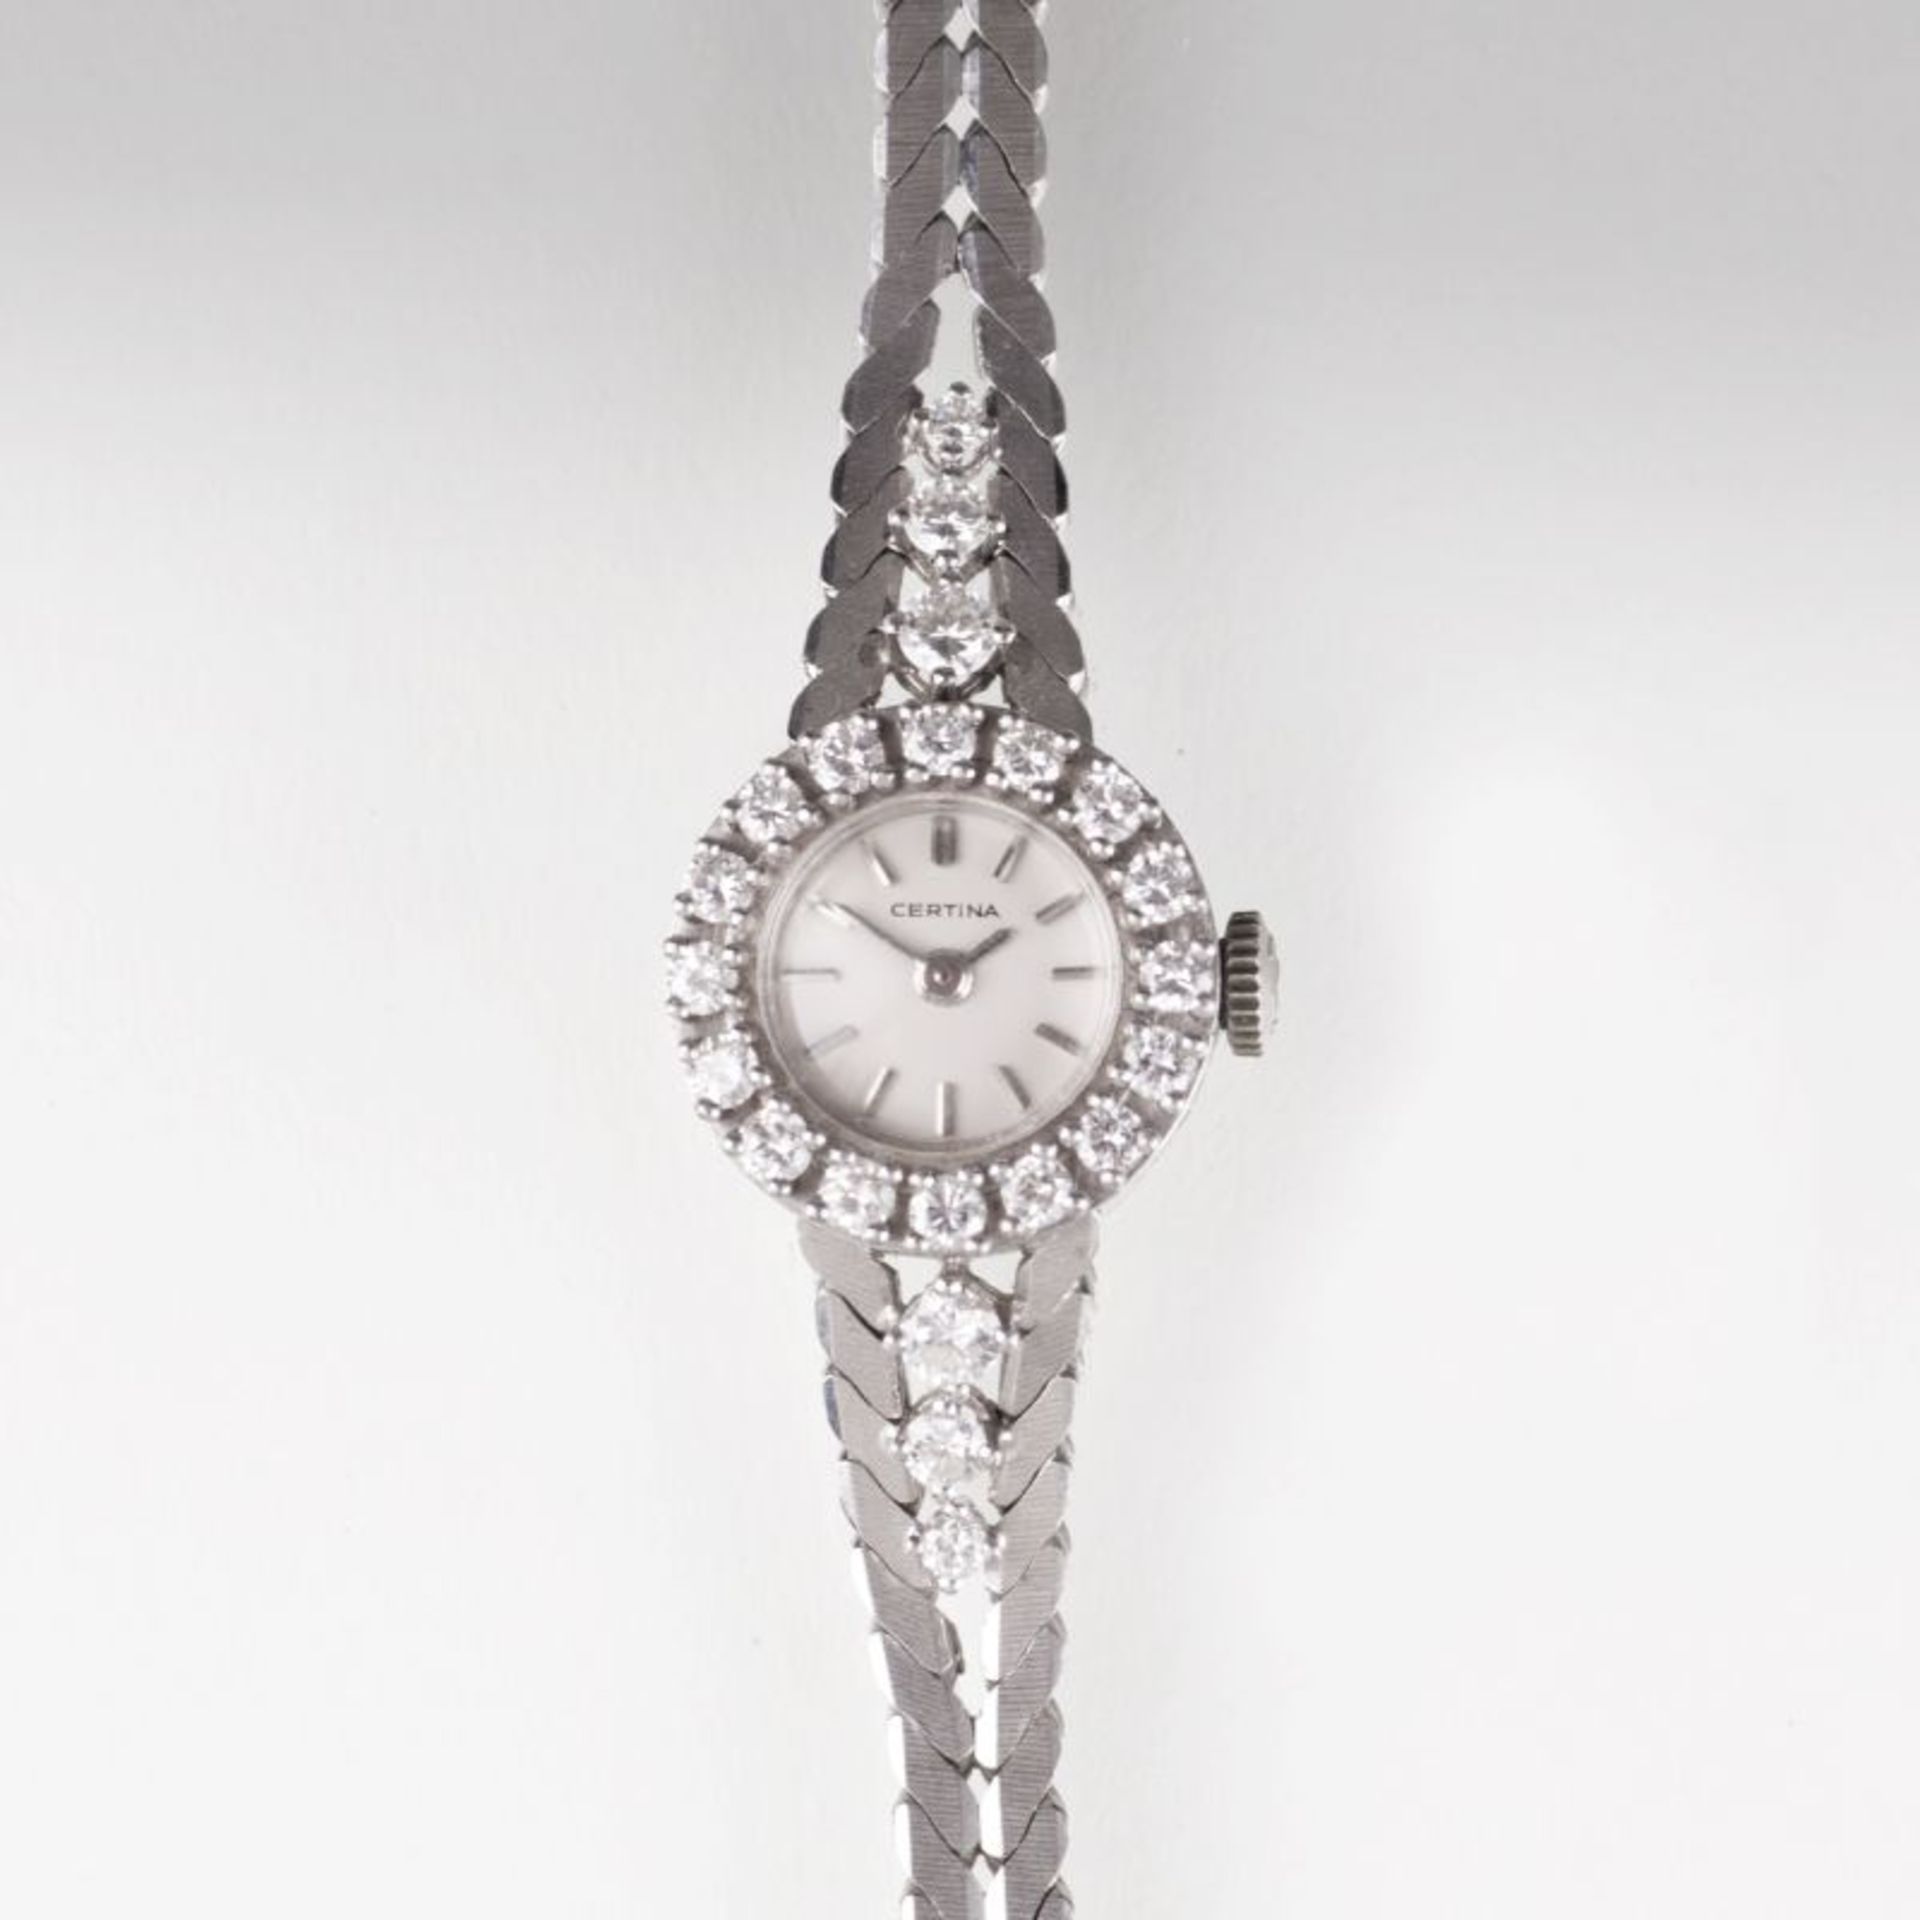 Certina ab 1888 in Grenchen/ Schweiz Vintage Damen-Armbanduhr mit Brillanten 18 kt. WG, gest.